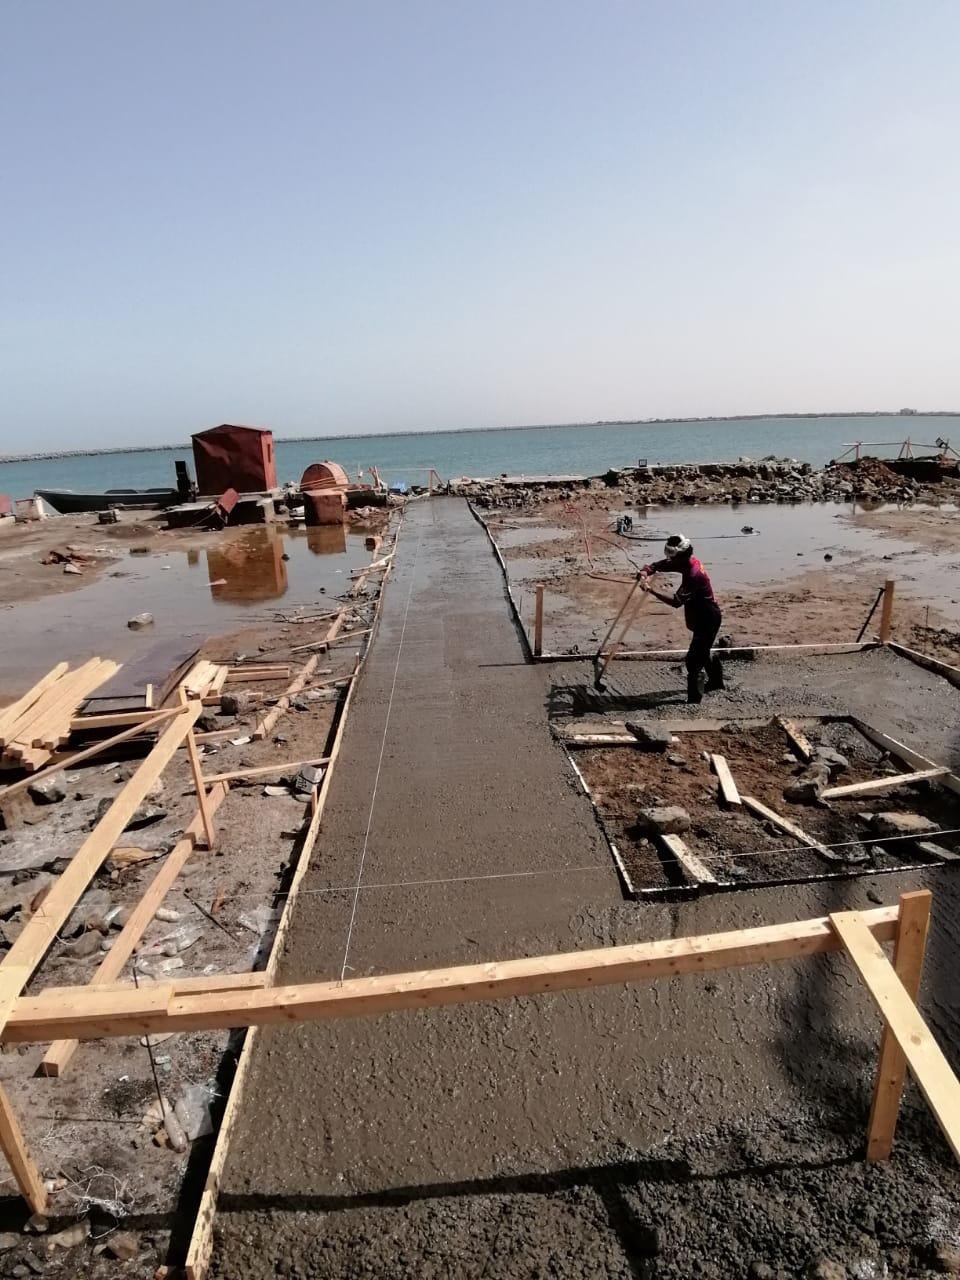 "إعمار اليمن" يبدأ أعماله في إنشاء ورشة صيانة القوارب في ميدي بحجة